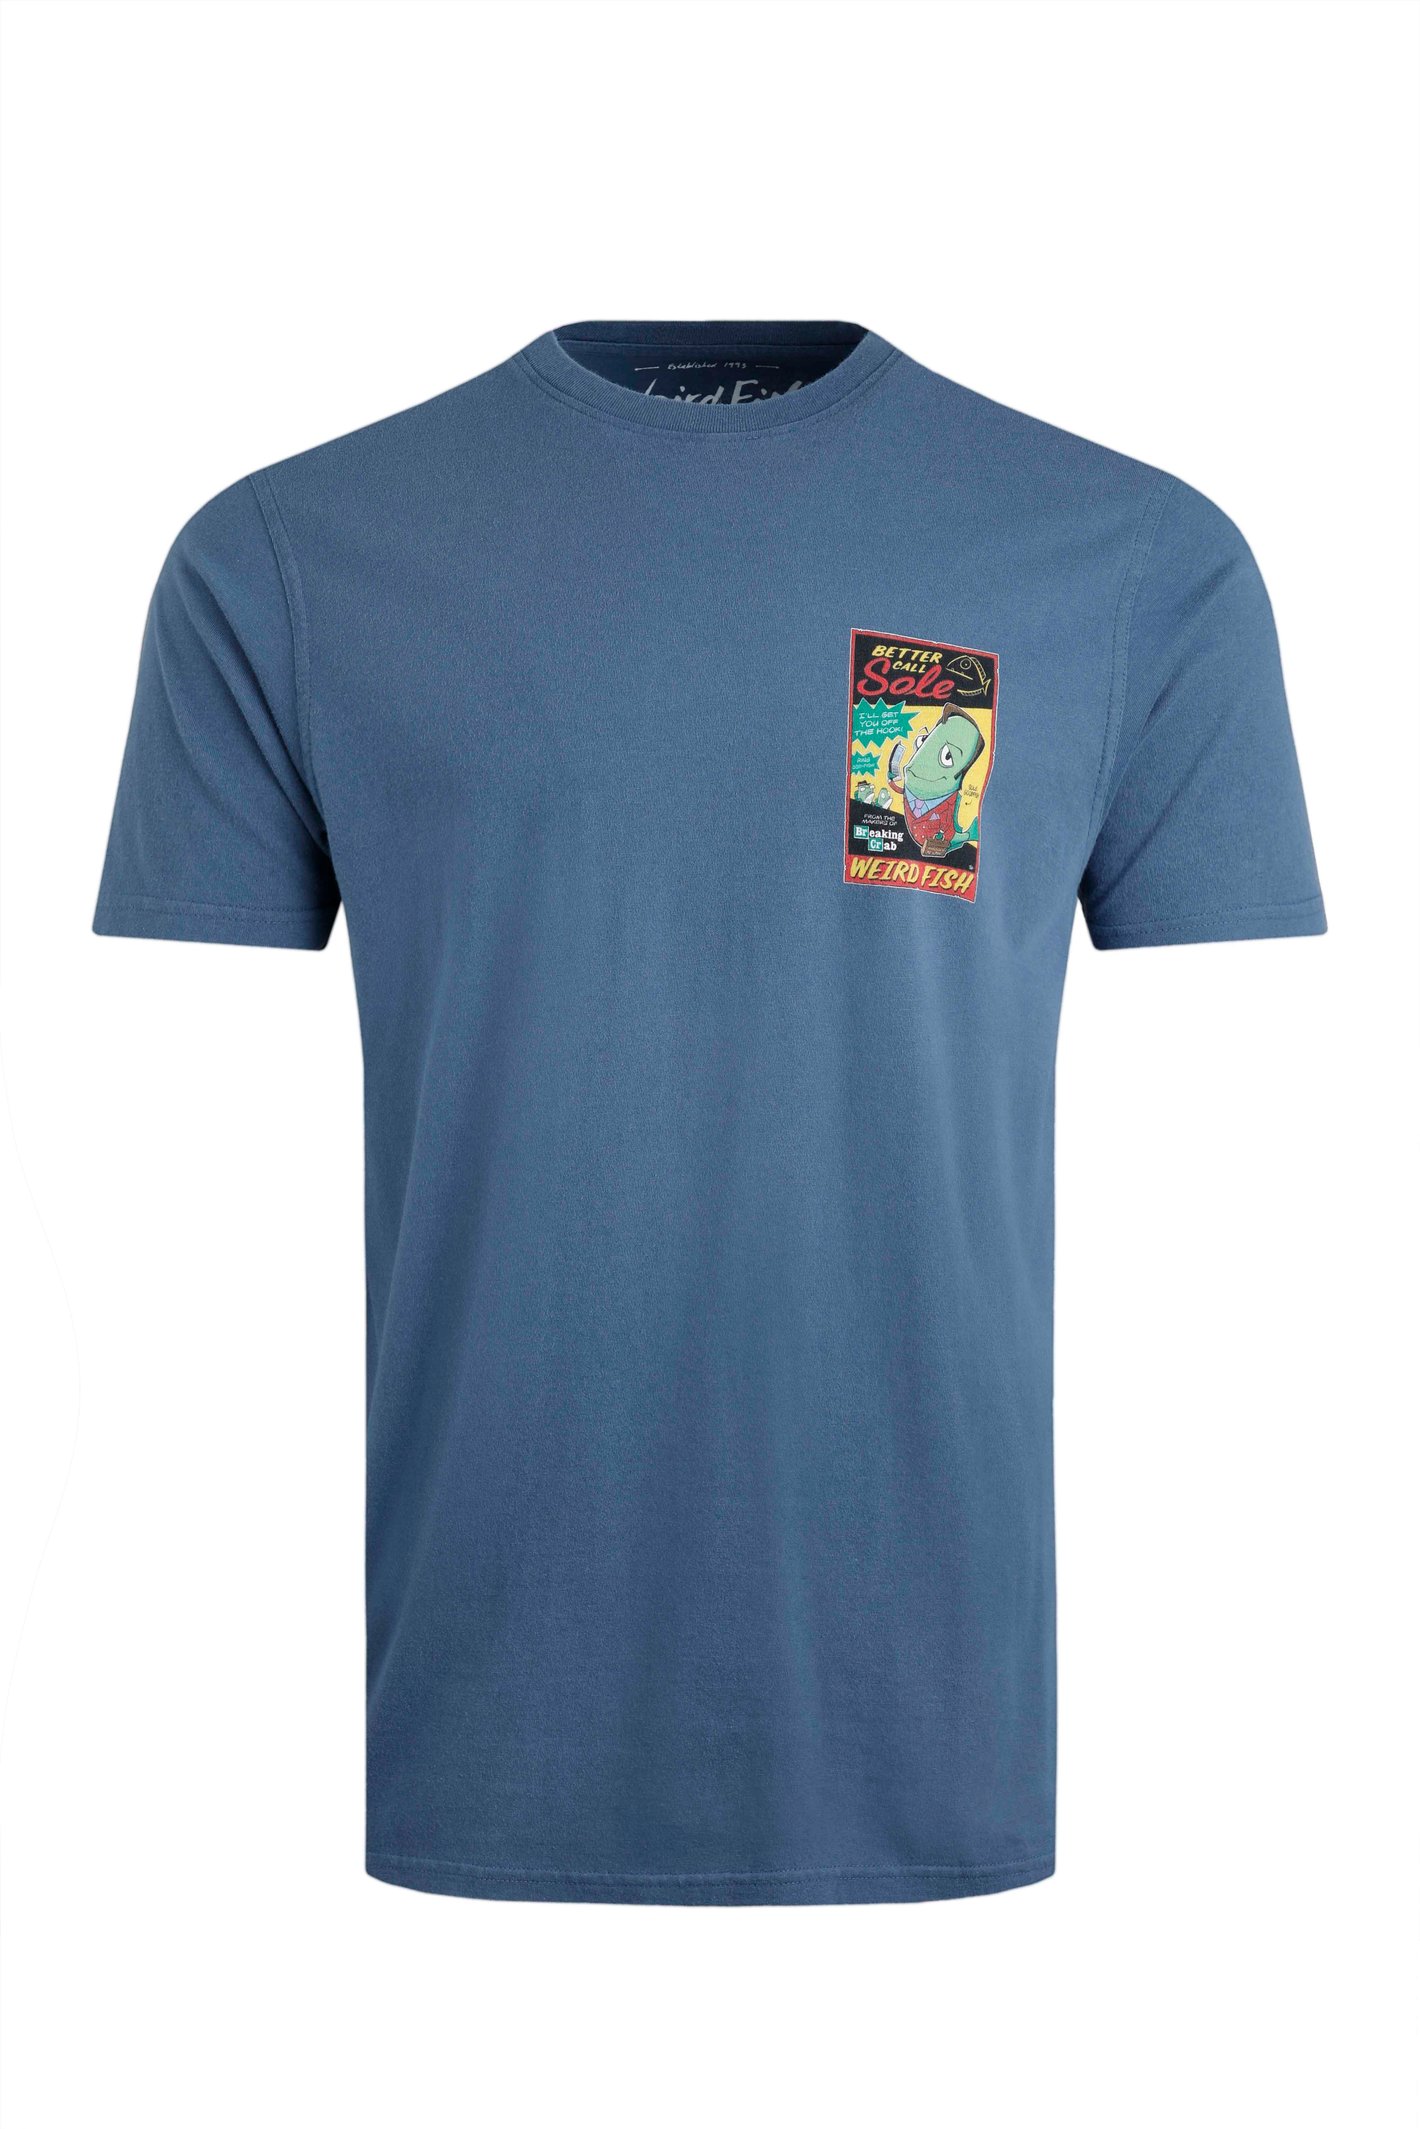 Weird Fish Call Sole Artist T-Shirt Ensign Blue Size 4XL